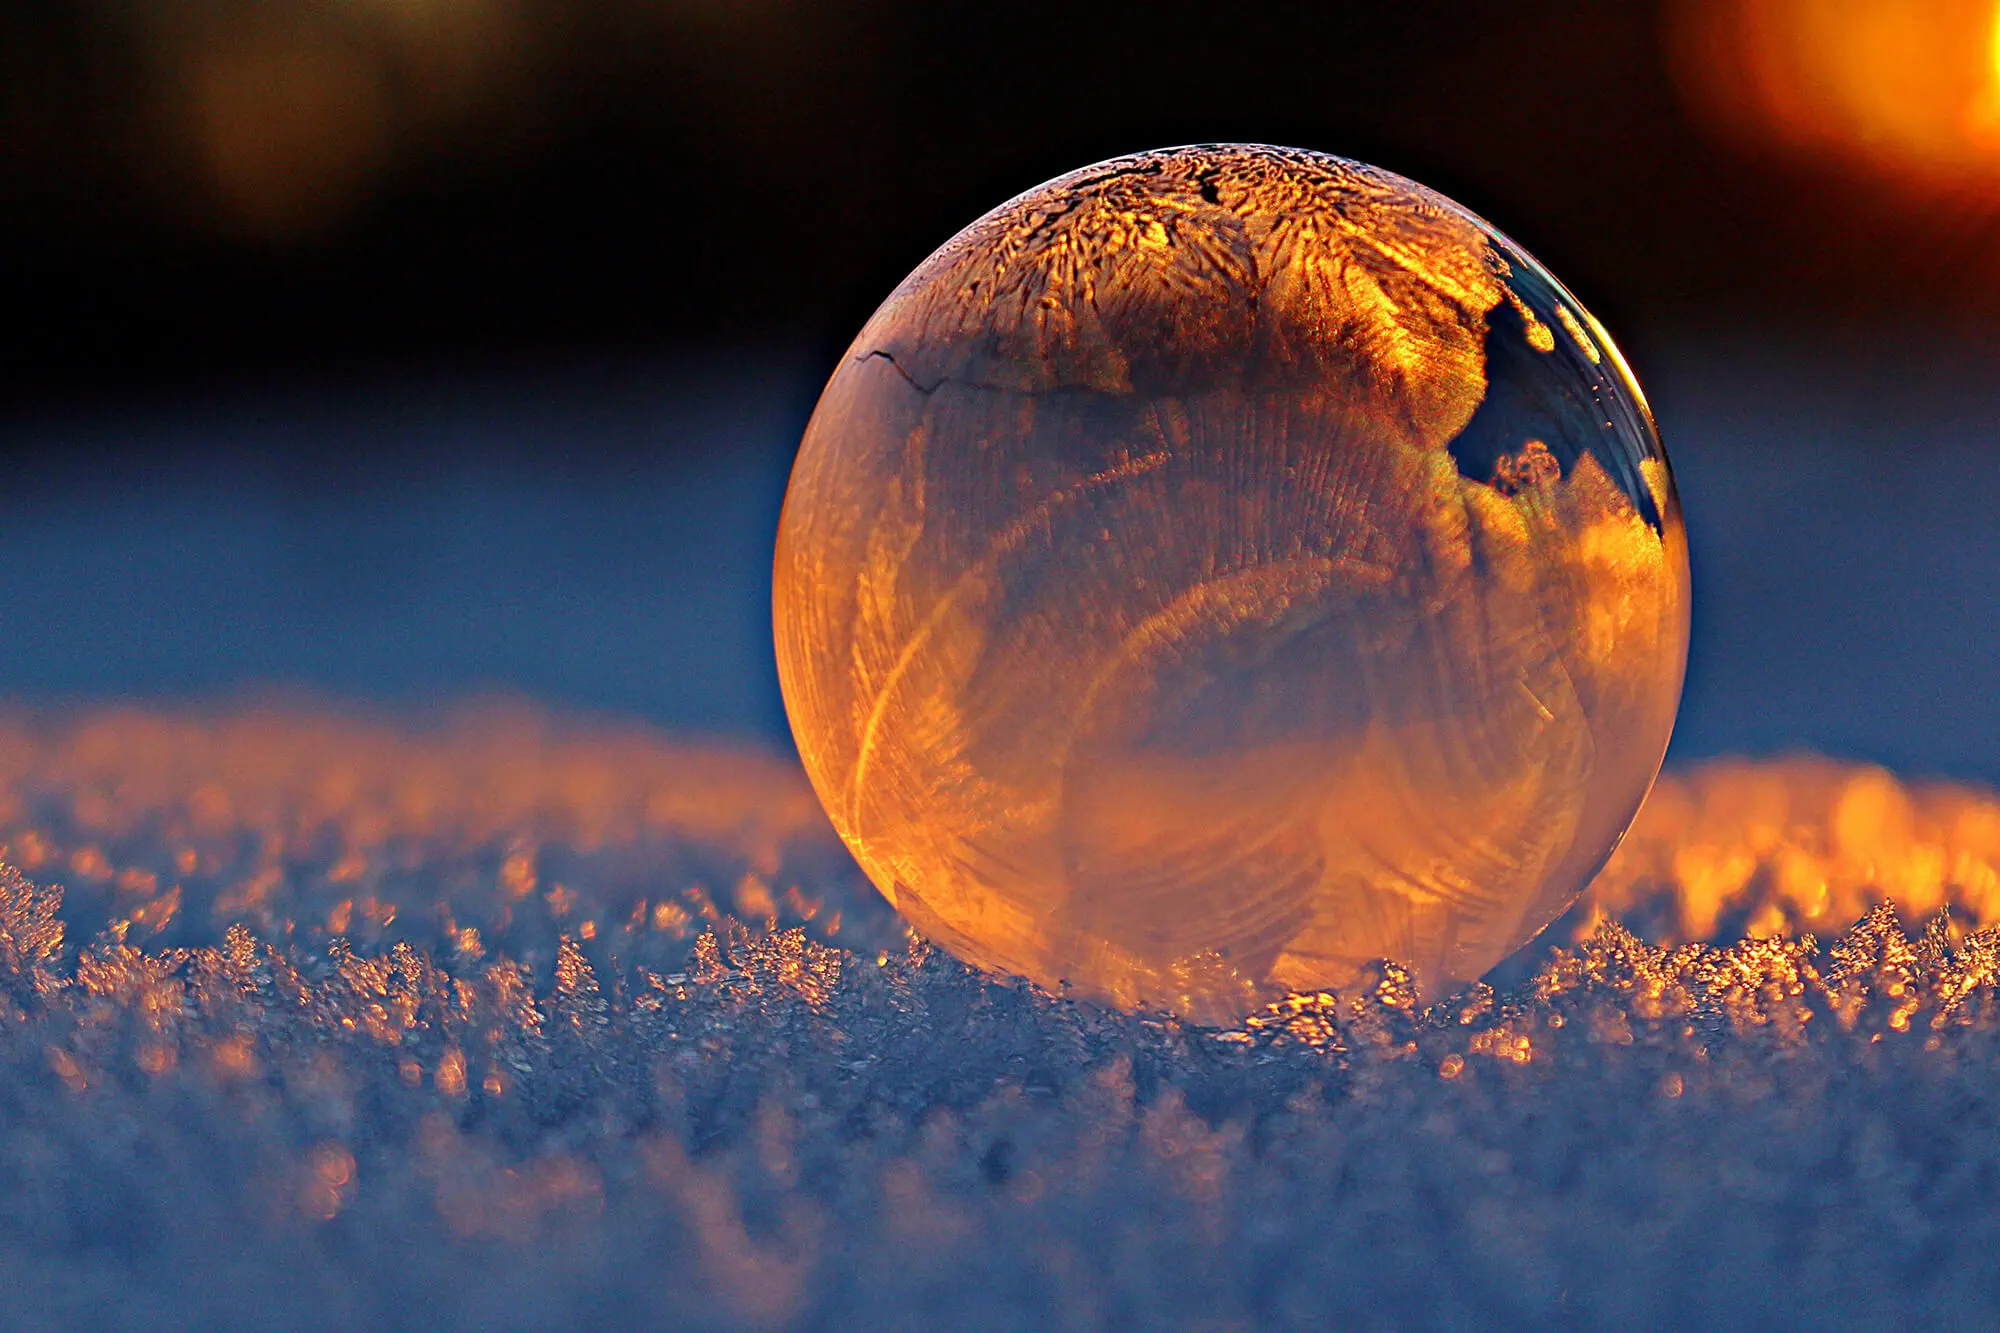 Frozen Bubble on Frosty Grass